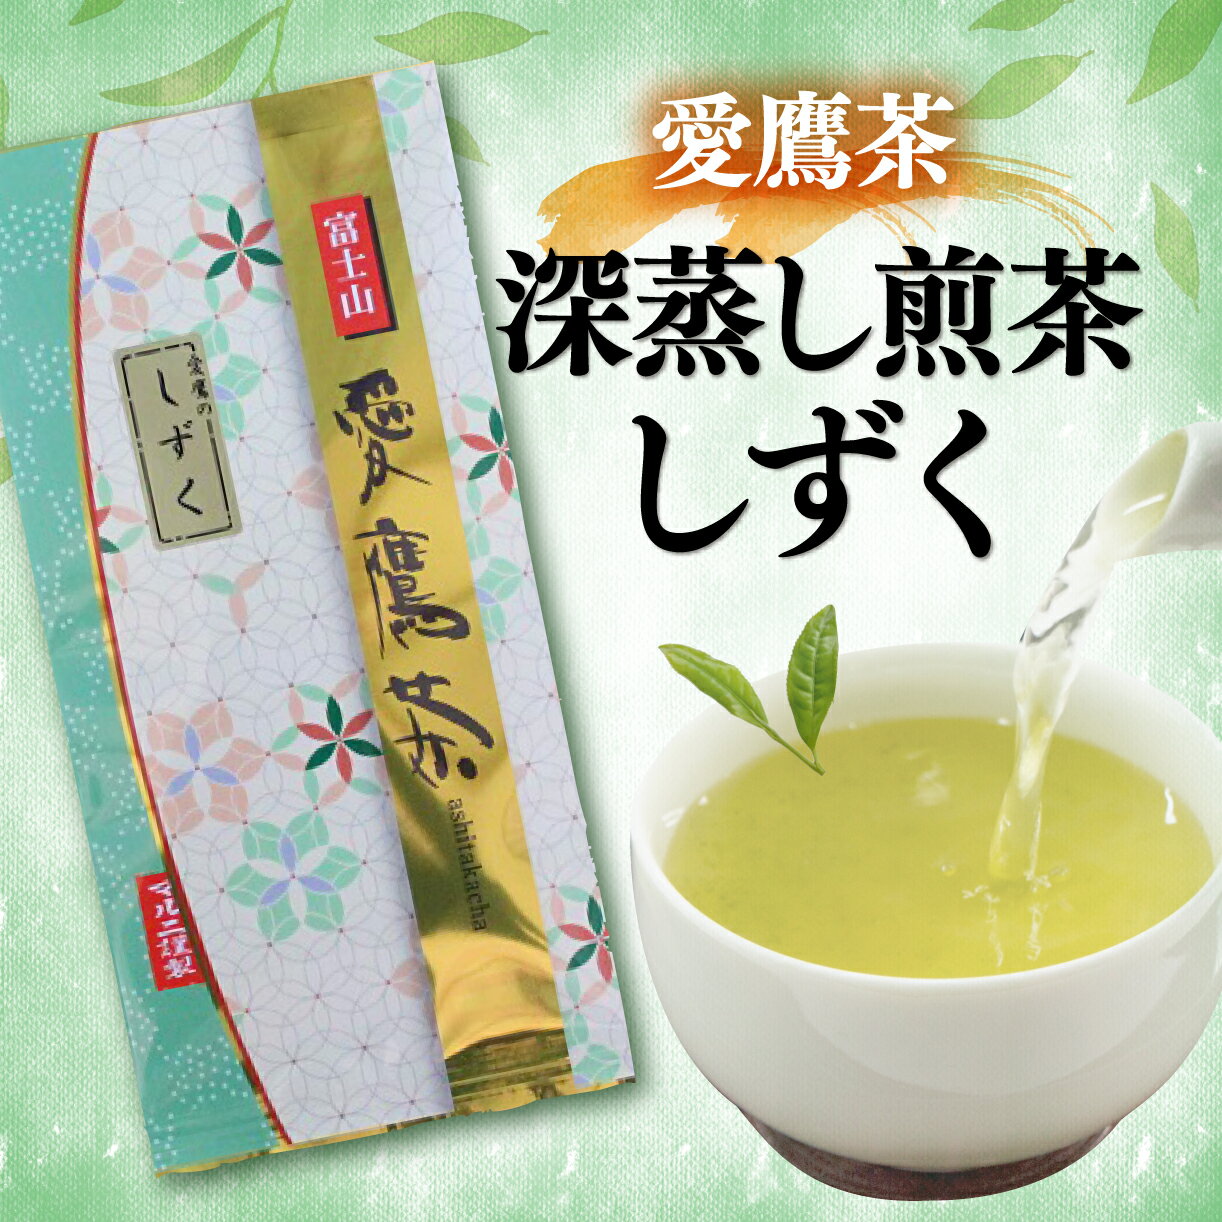 お茶 茶葉 緑茶 深蒸し 煎茶 しずく 100g 静岡 5000円 10000円以下 1万円以下